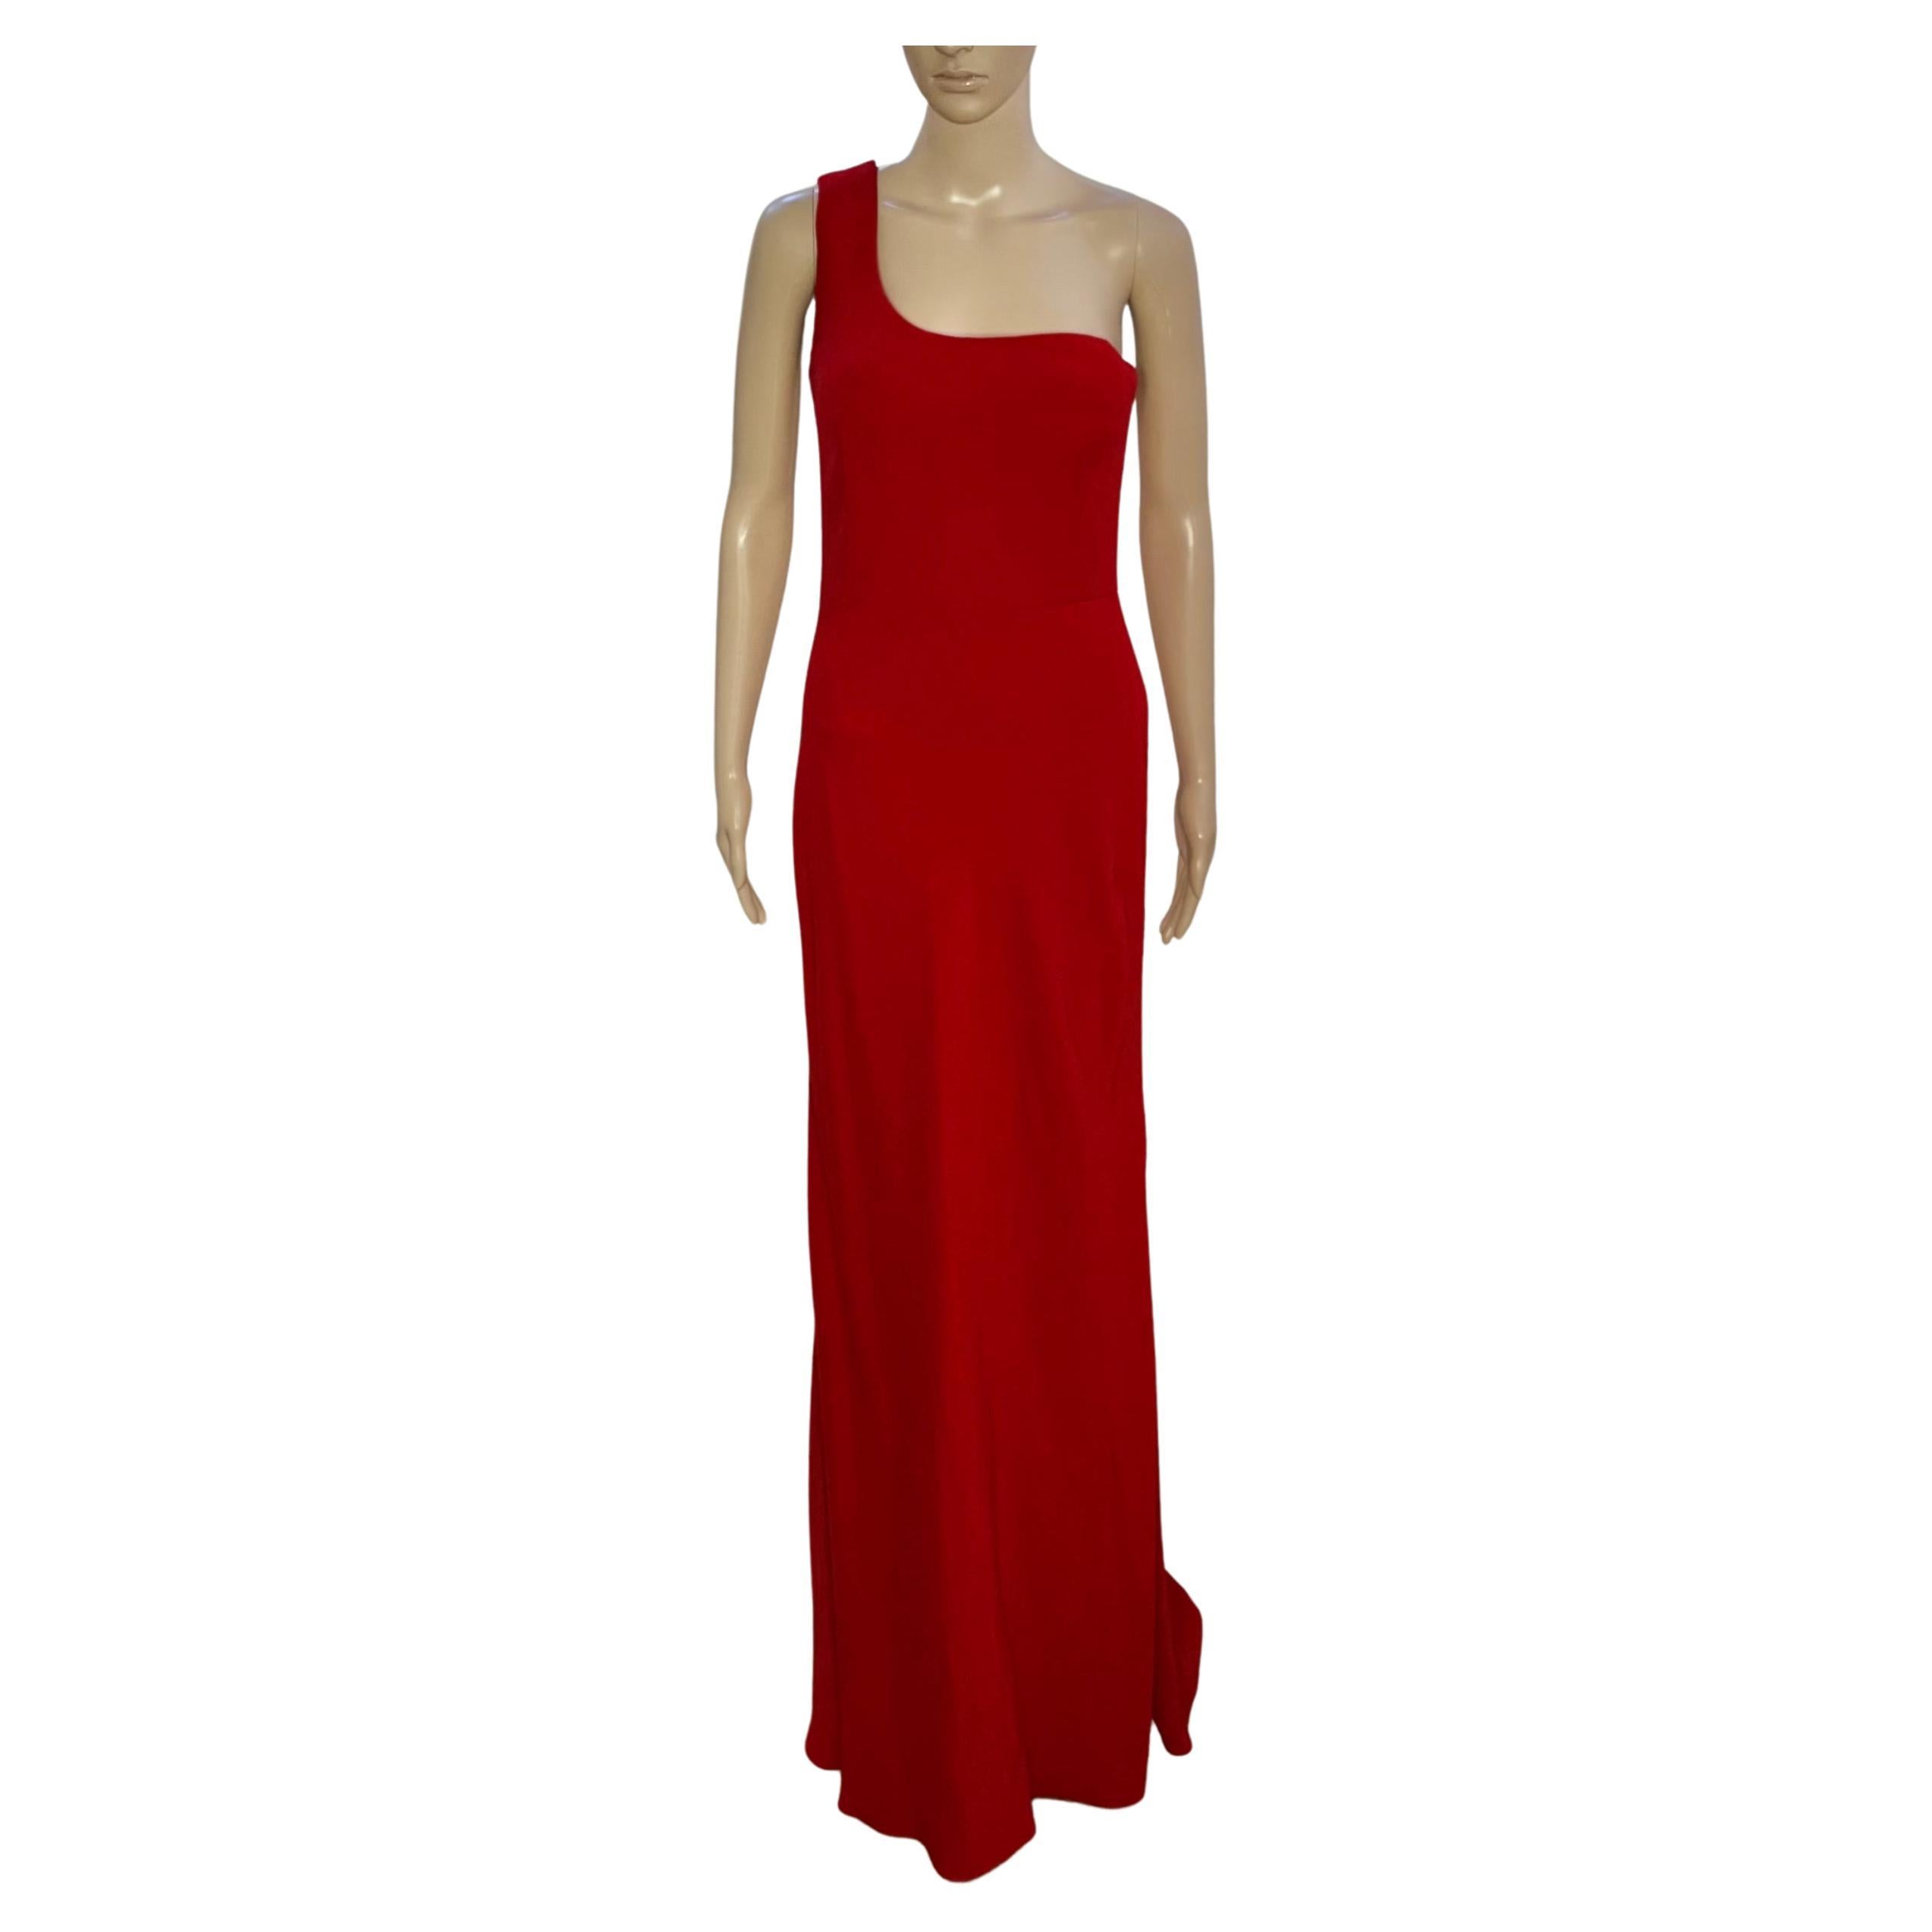 ALEXANDER McQueen RED LONG EVENING DRESS size IT 42